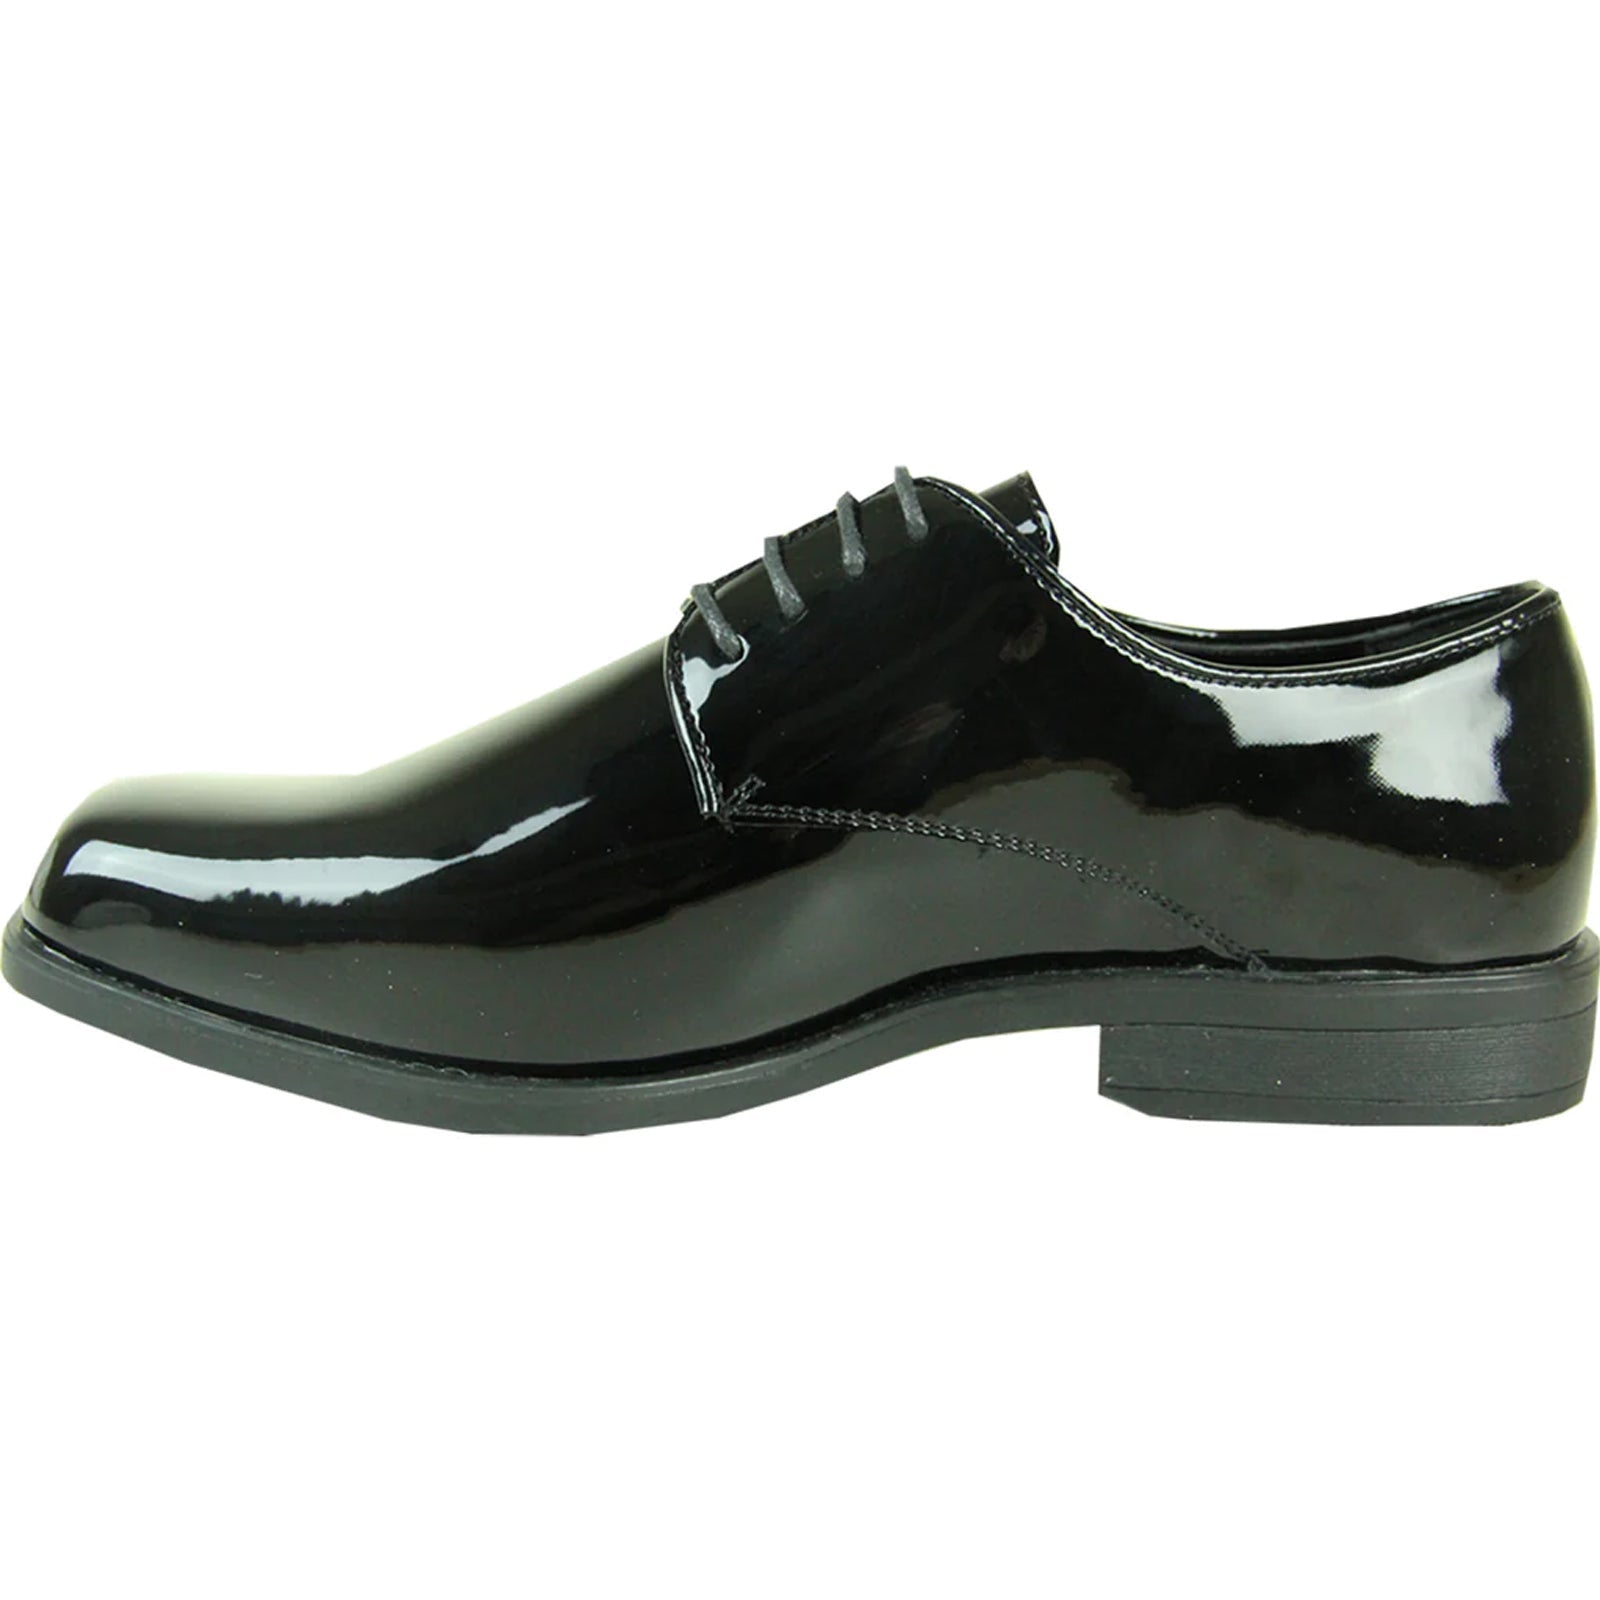 "Black Patent Tuxedo Dress Shoe - Men's Classic Plain Square Toe"